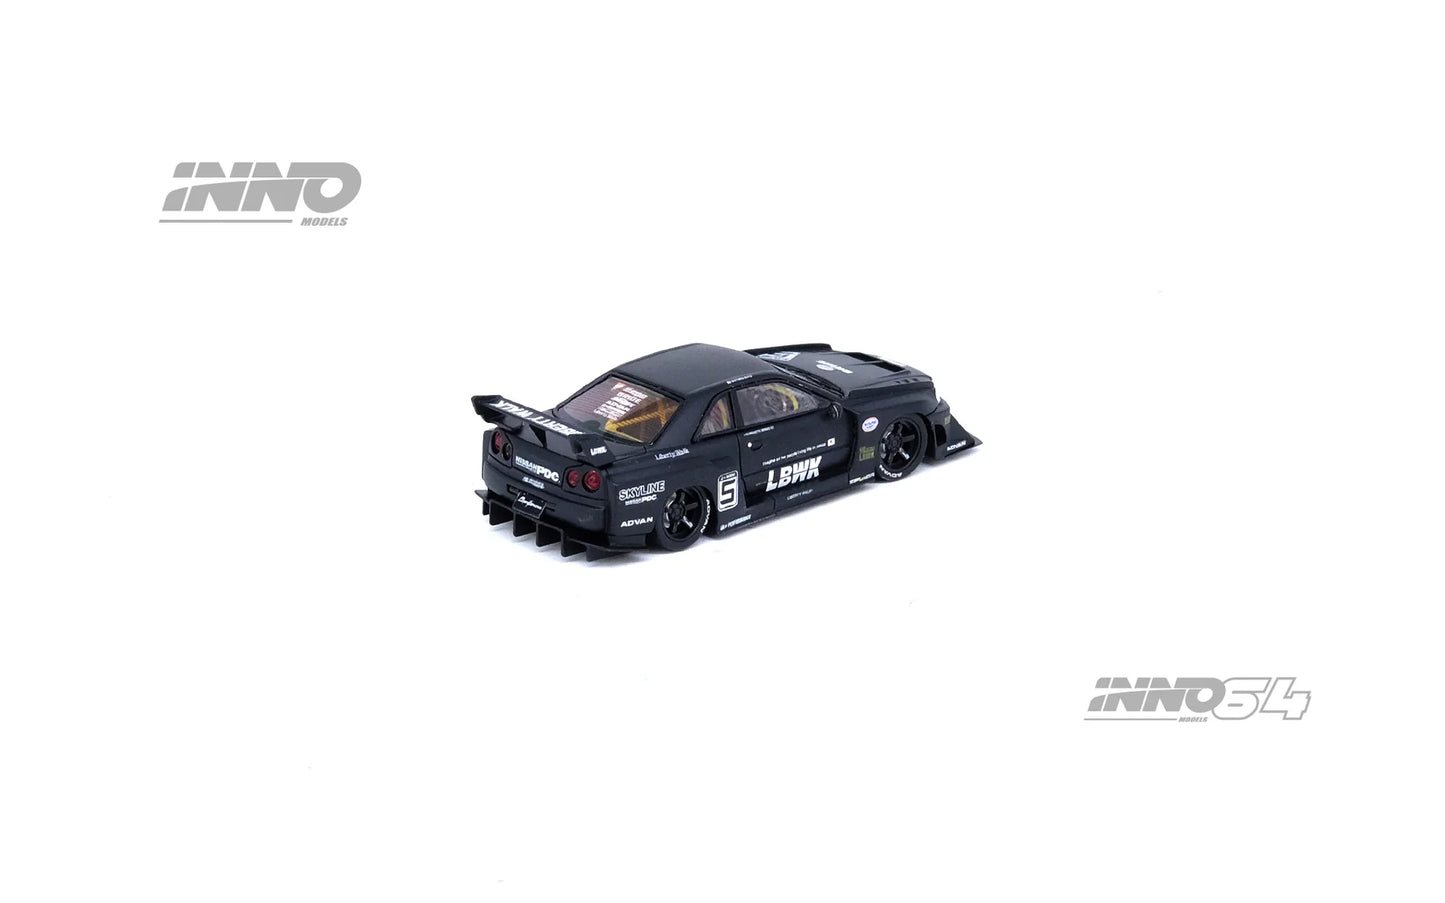 Inno64 Nissan Skyline LBWK ER34 Super Silhouette Black 1:64